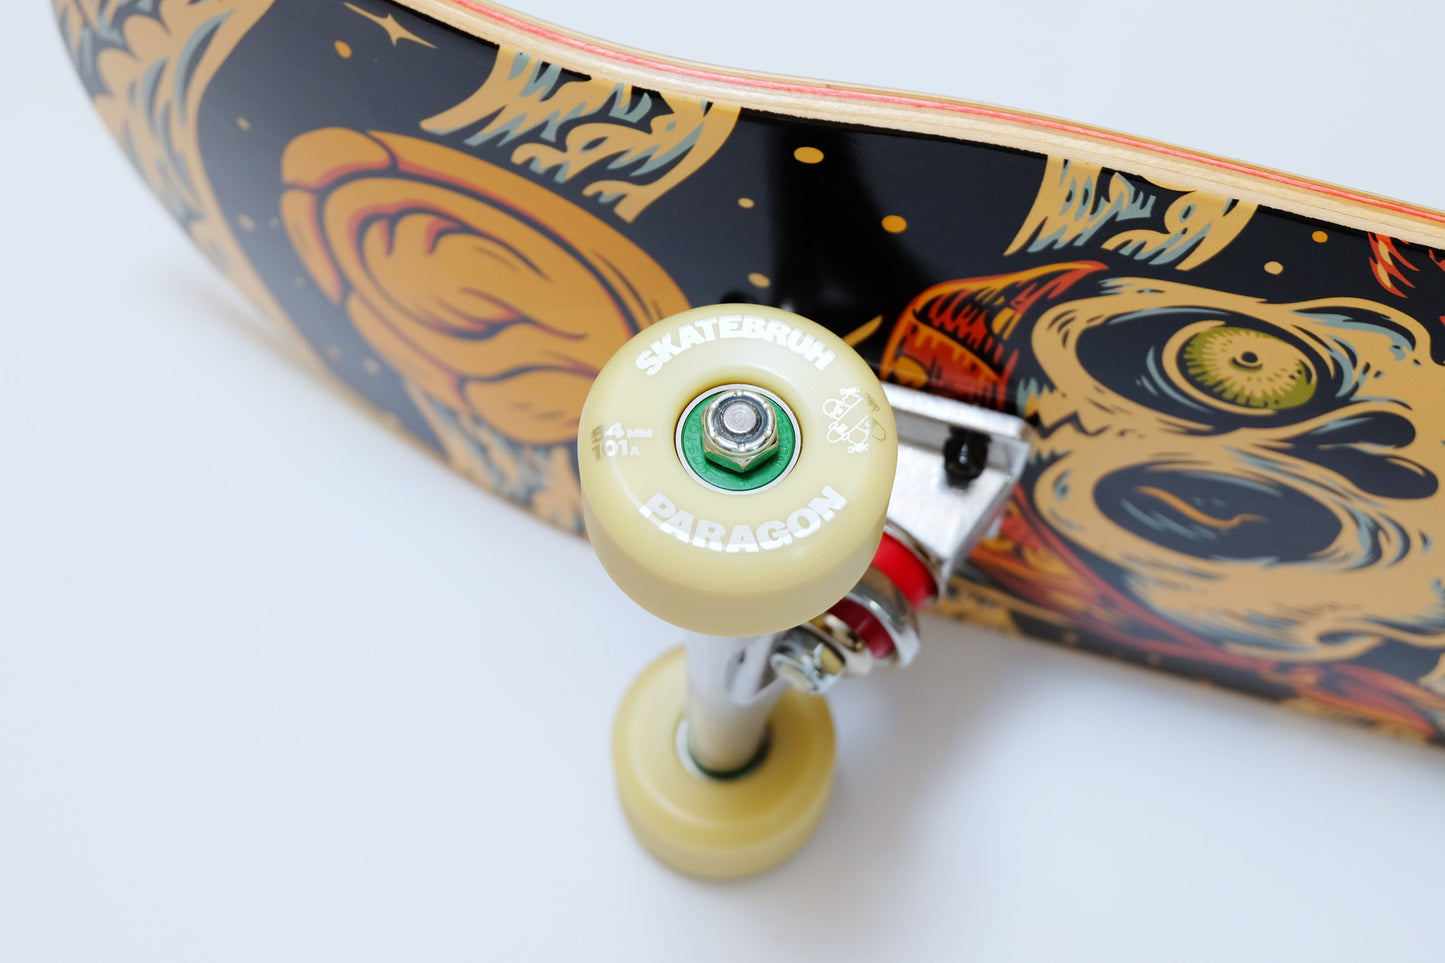 Element Timber High Dry Skull skateboard - SkatebruhSG